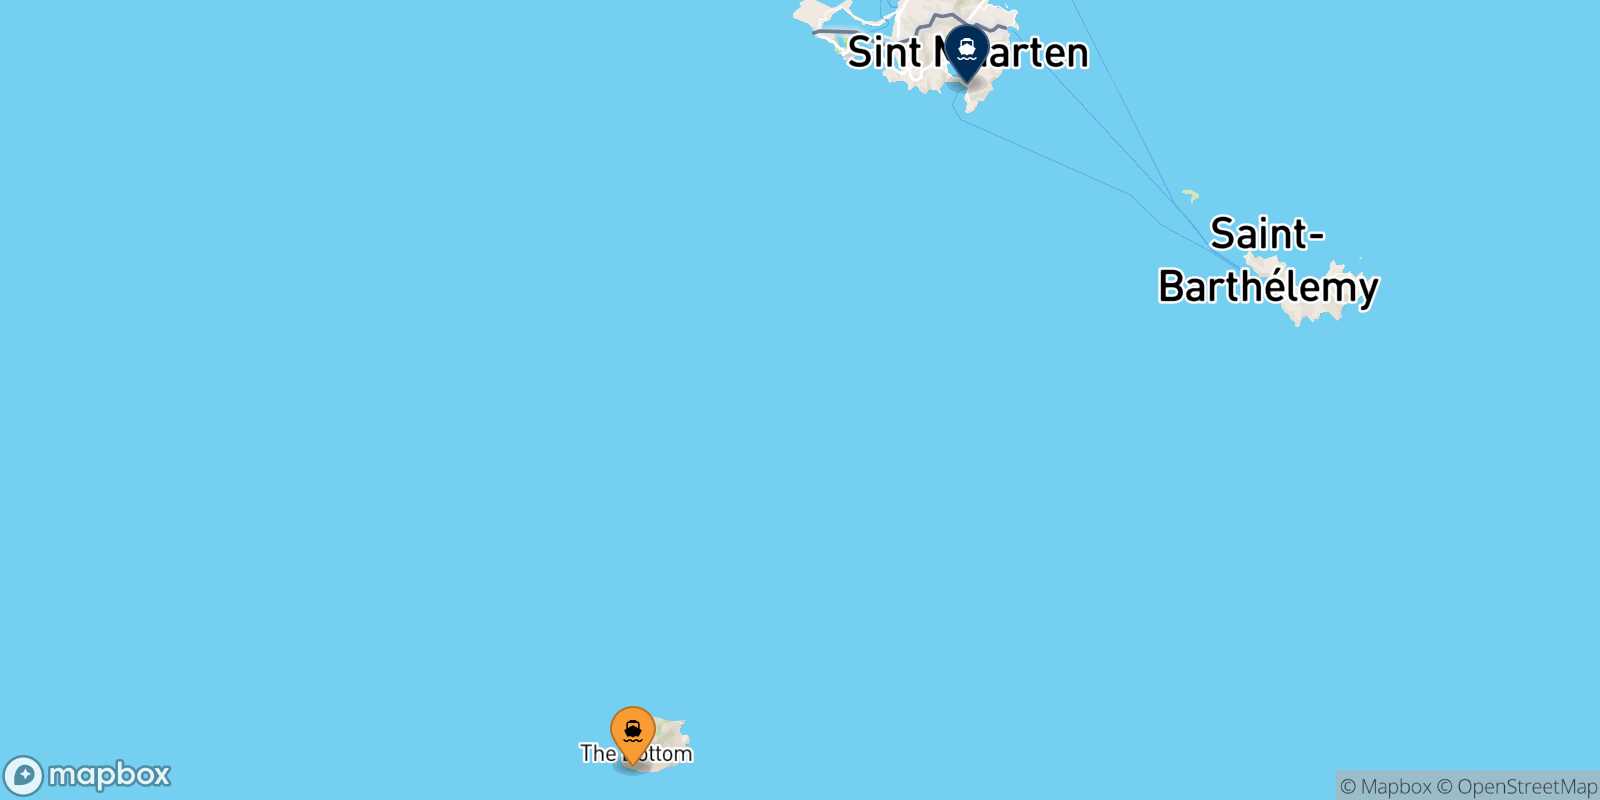 Mappa delle destinazioni raggiungibili da Saba